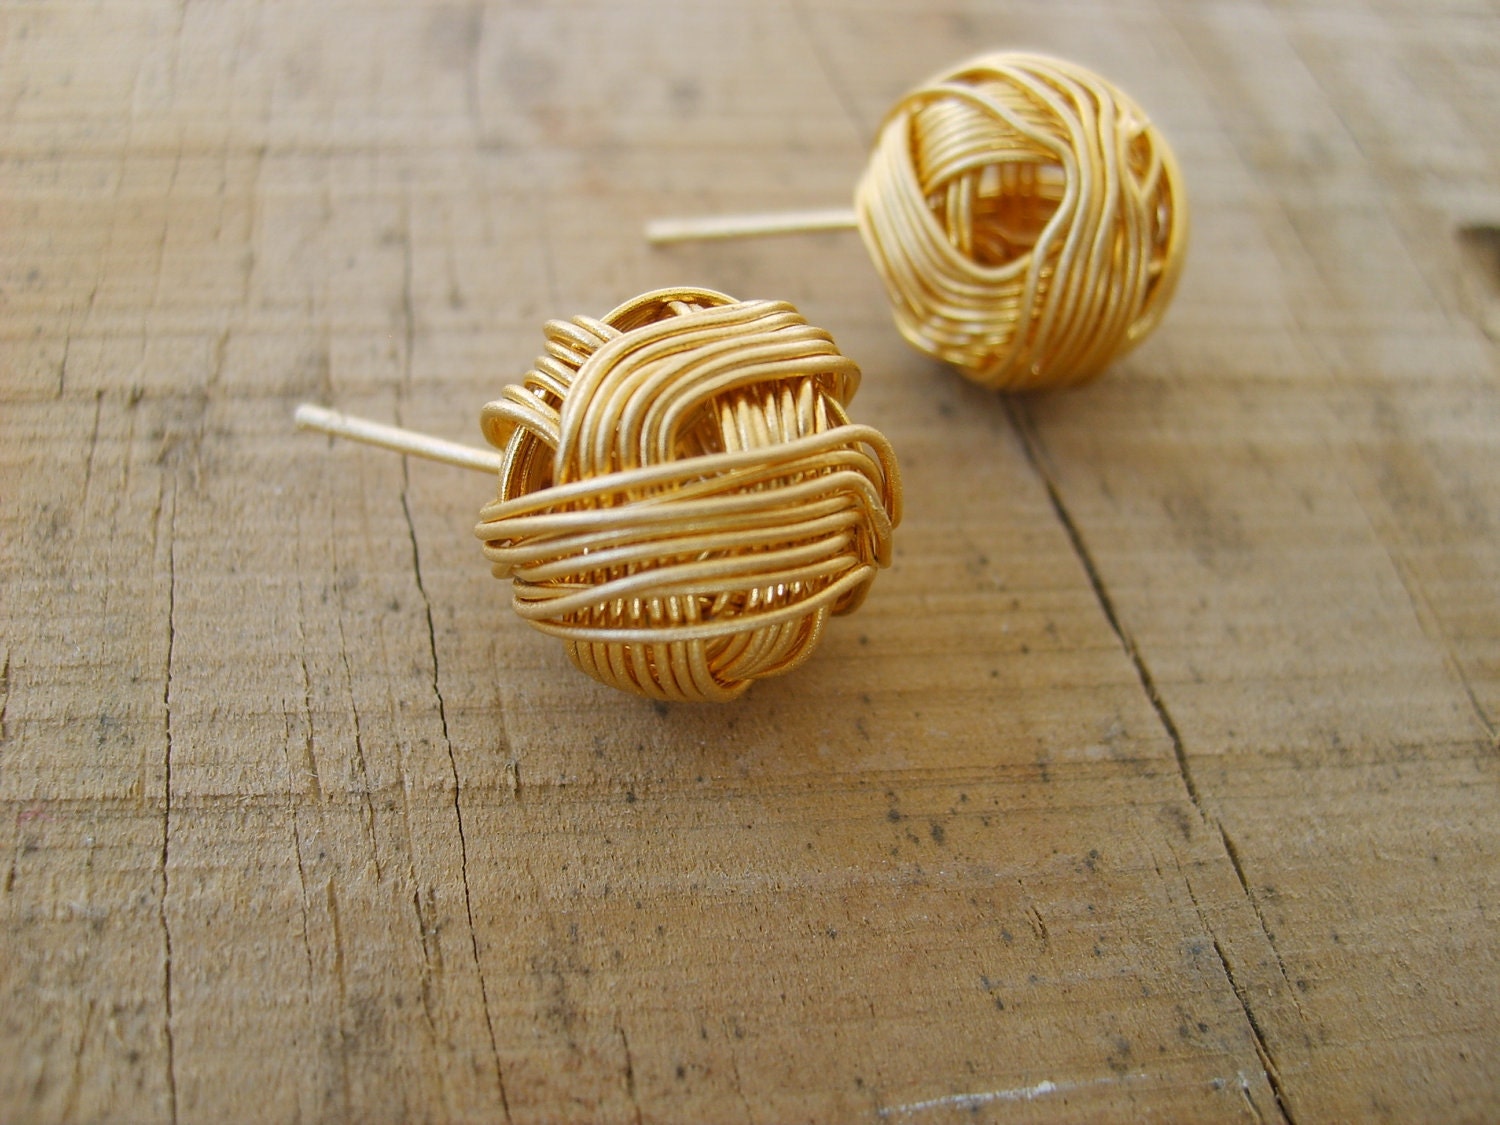 Sweet pompom stud earrings in gold, gold studs, gold stud earrings